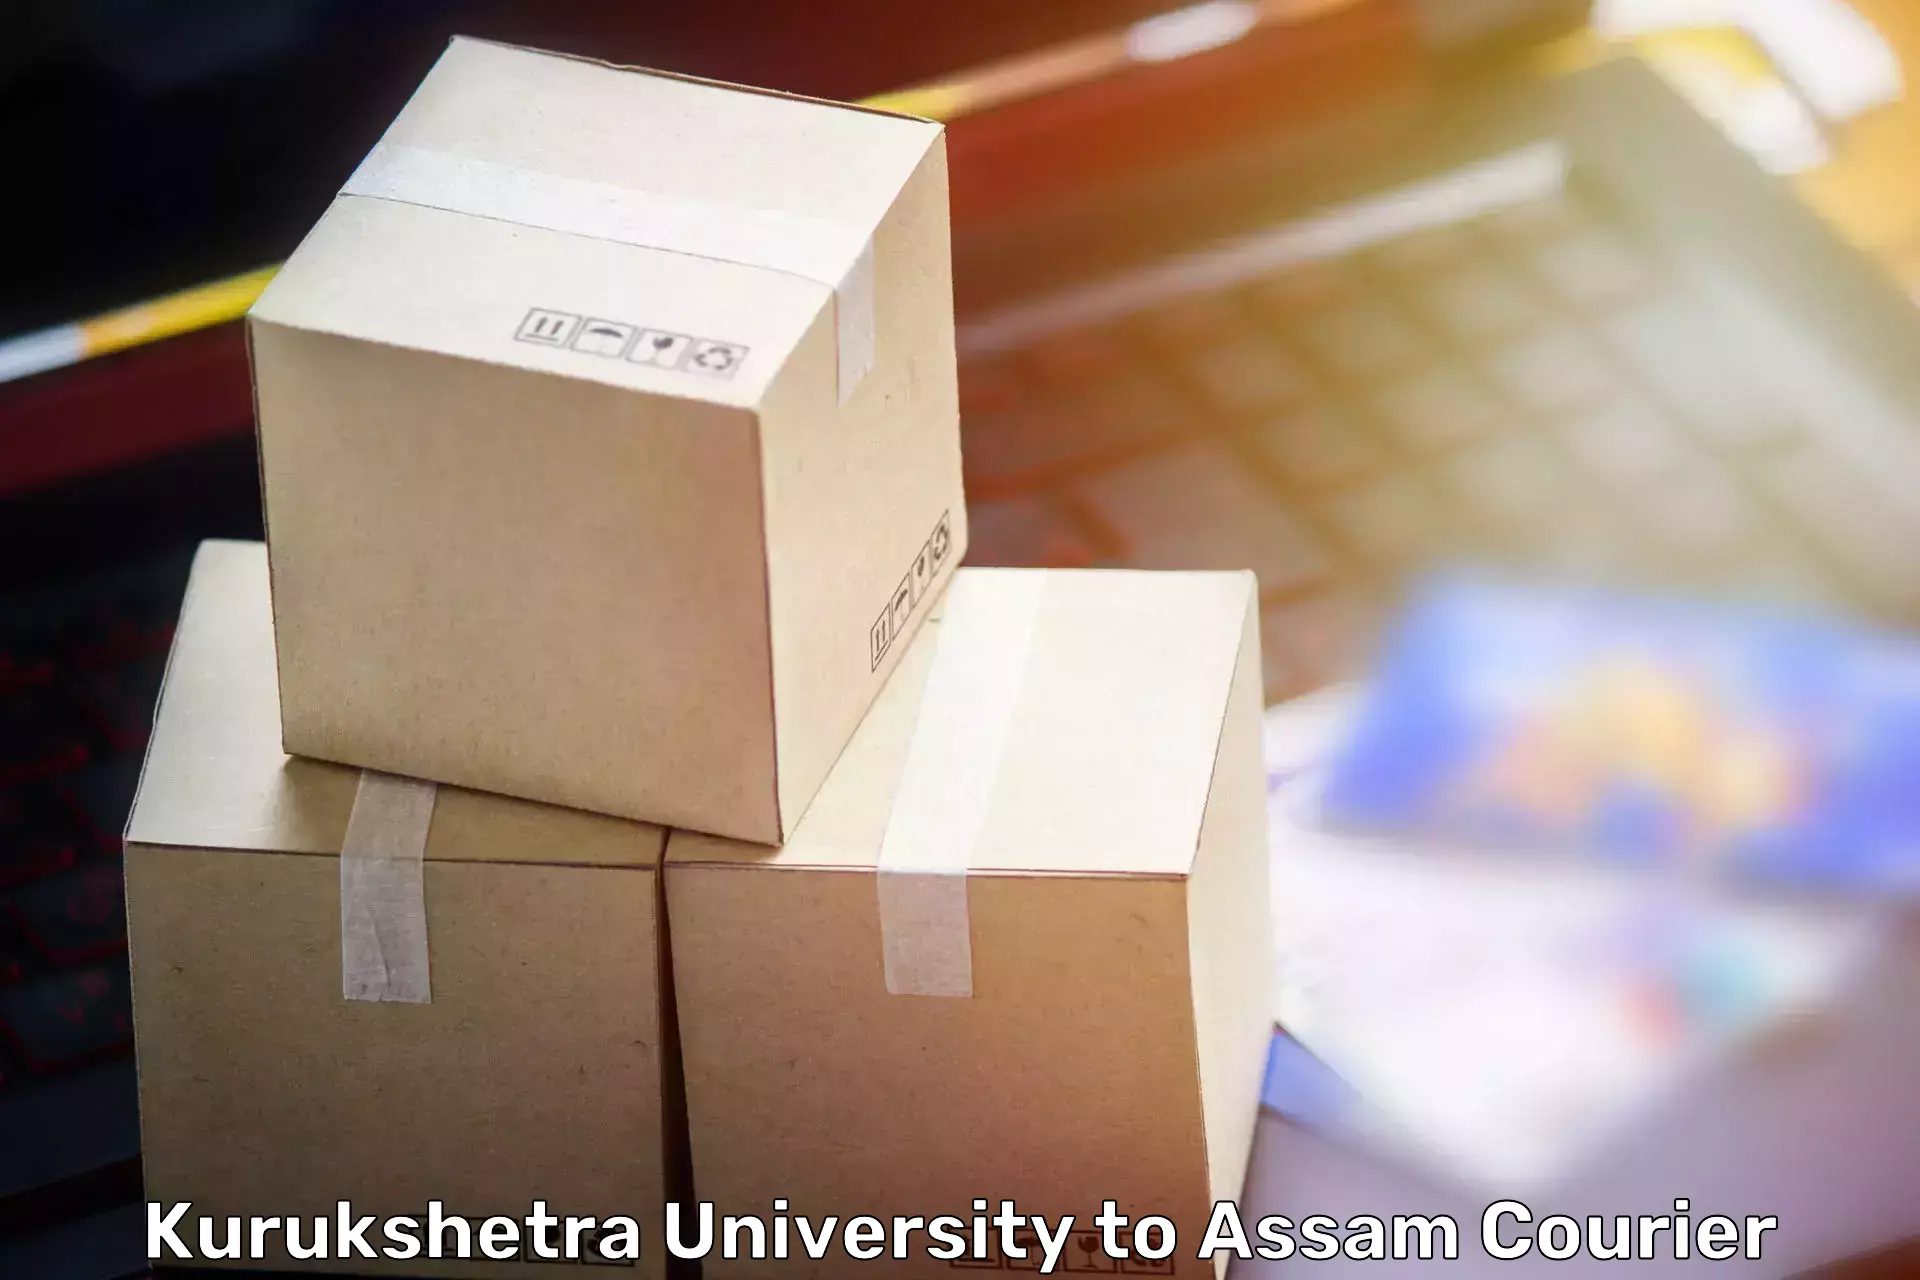 Efficient home relocation in Kurukshetra University to Gauhati University Guwahati